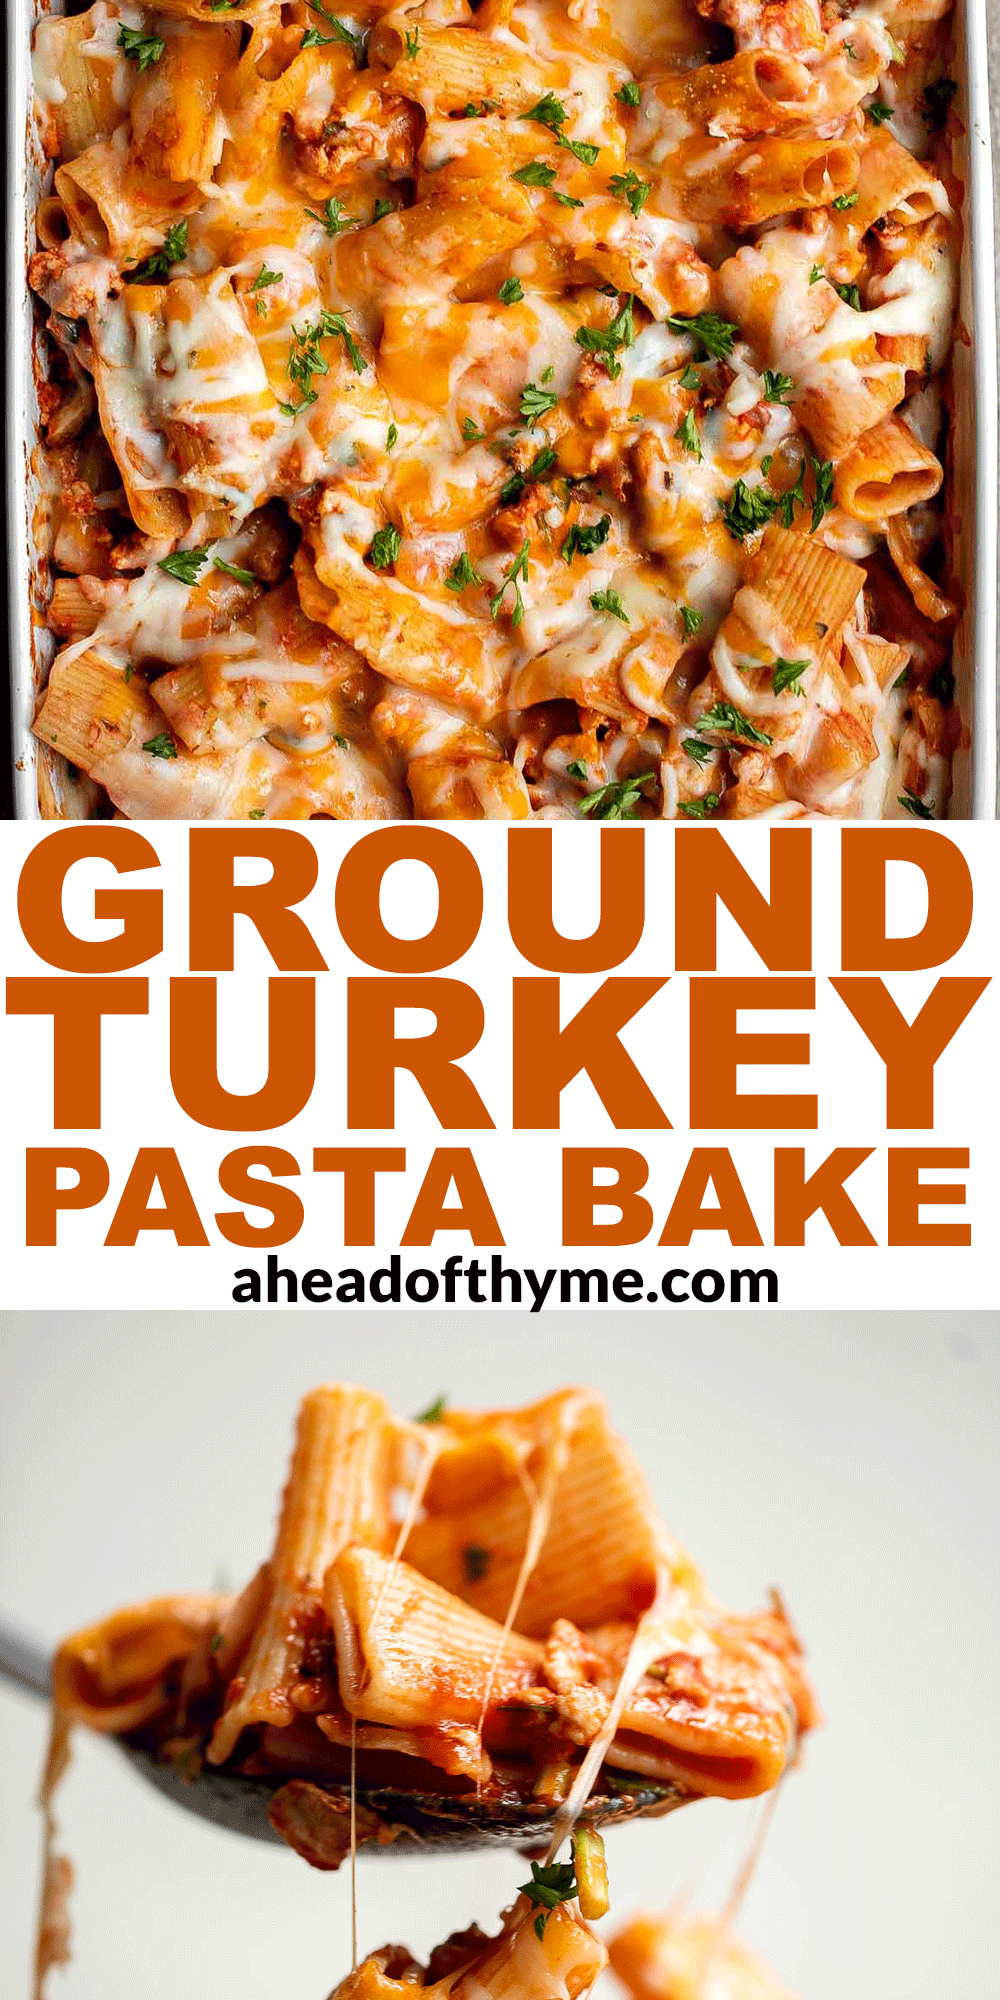 Ground Turkey Pasta Bake